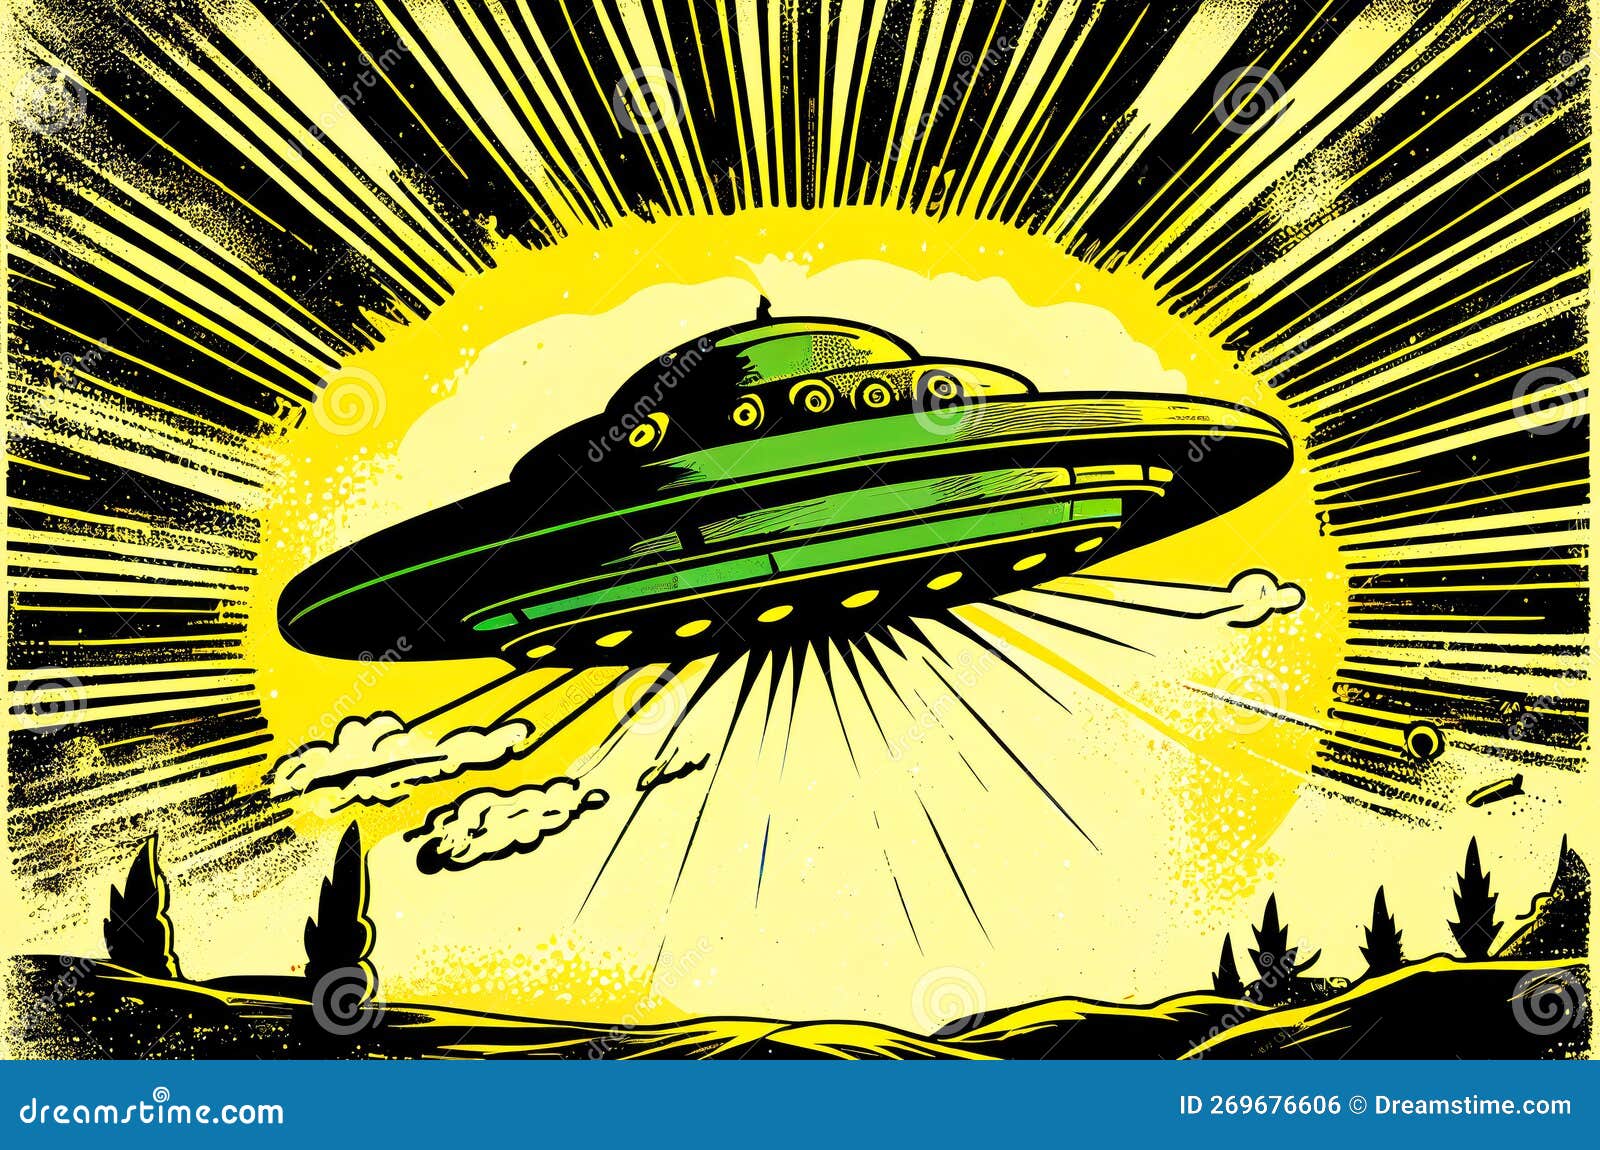 Coleção De Alienígenas UFO, Diferentes Extraterrestres Coloridos